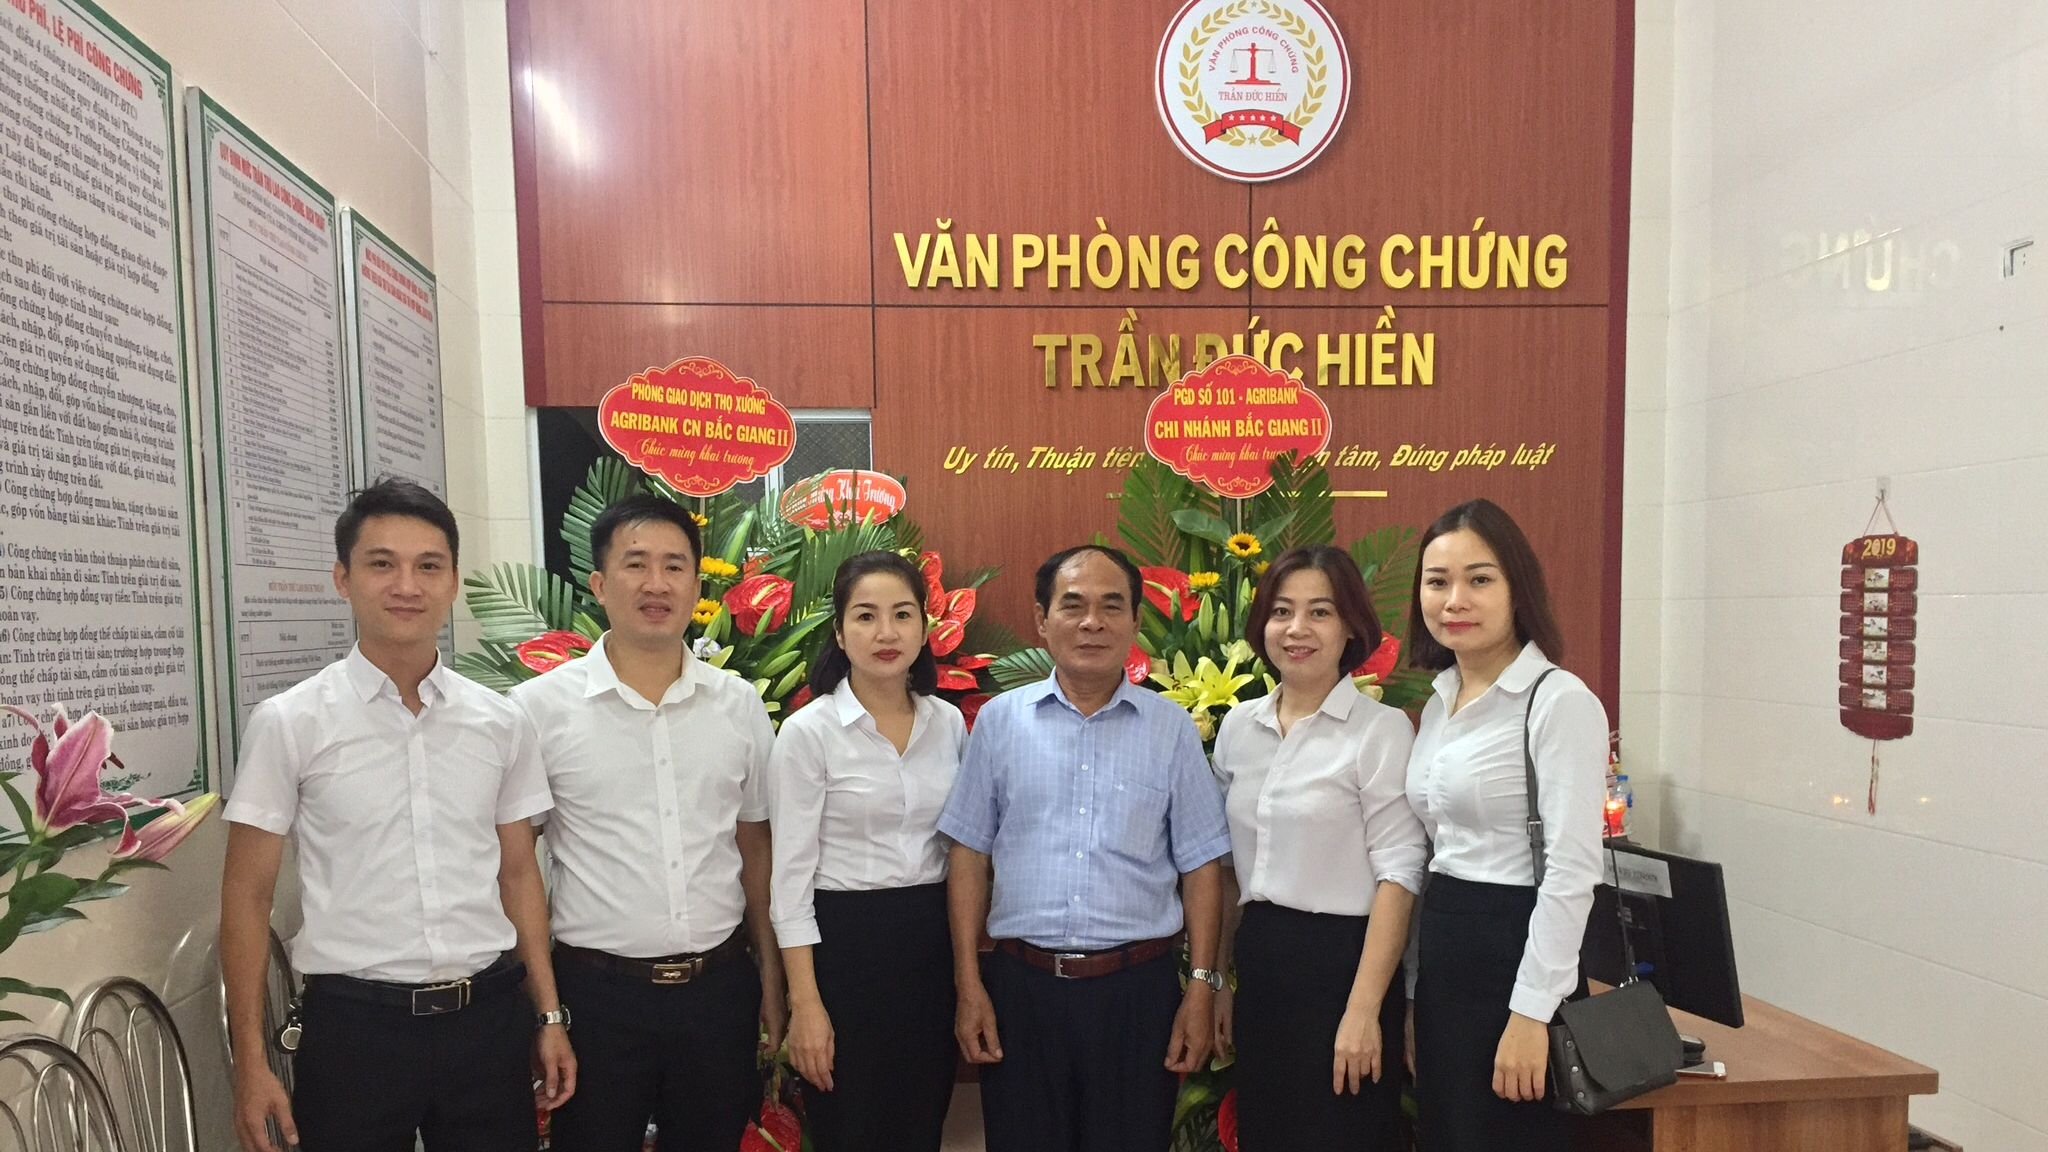 Văn phòng công chứng Trần Đức Hiền, tỉnh Bắc Giang